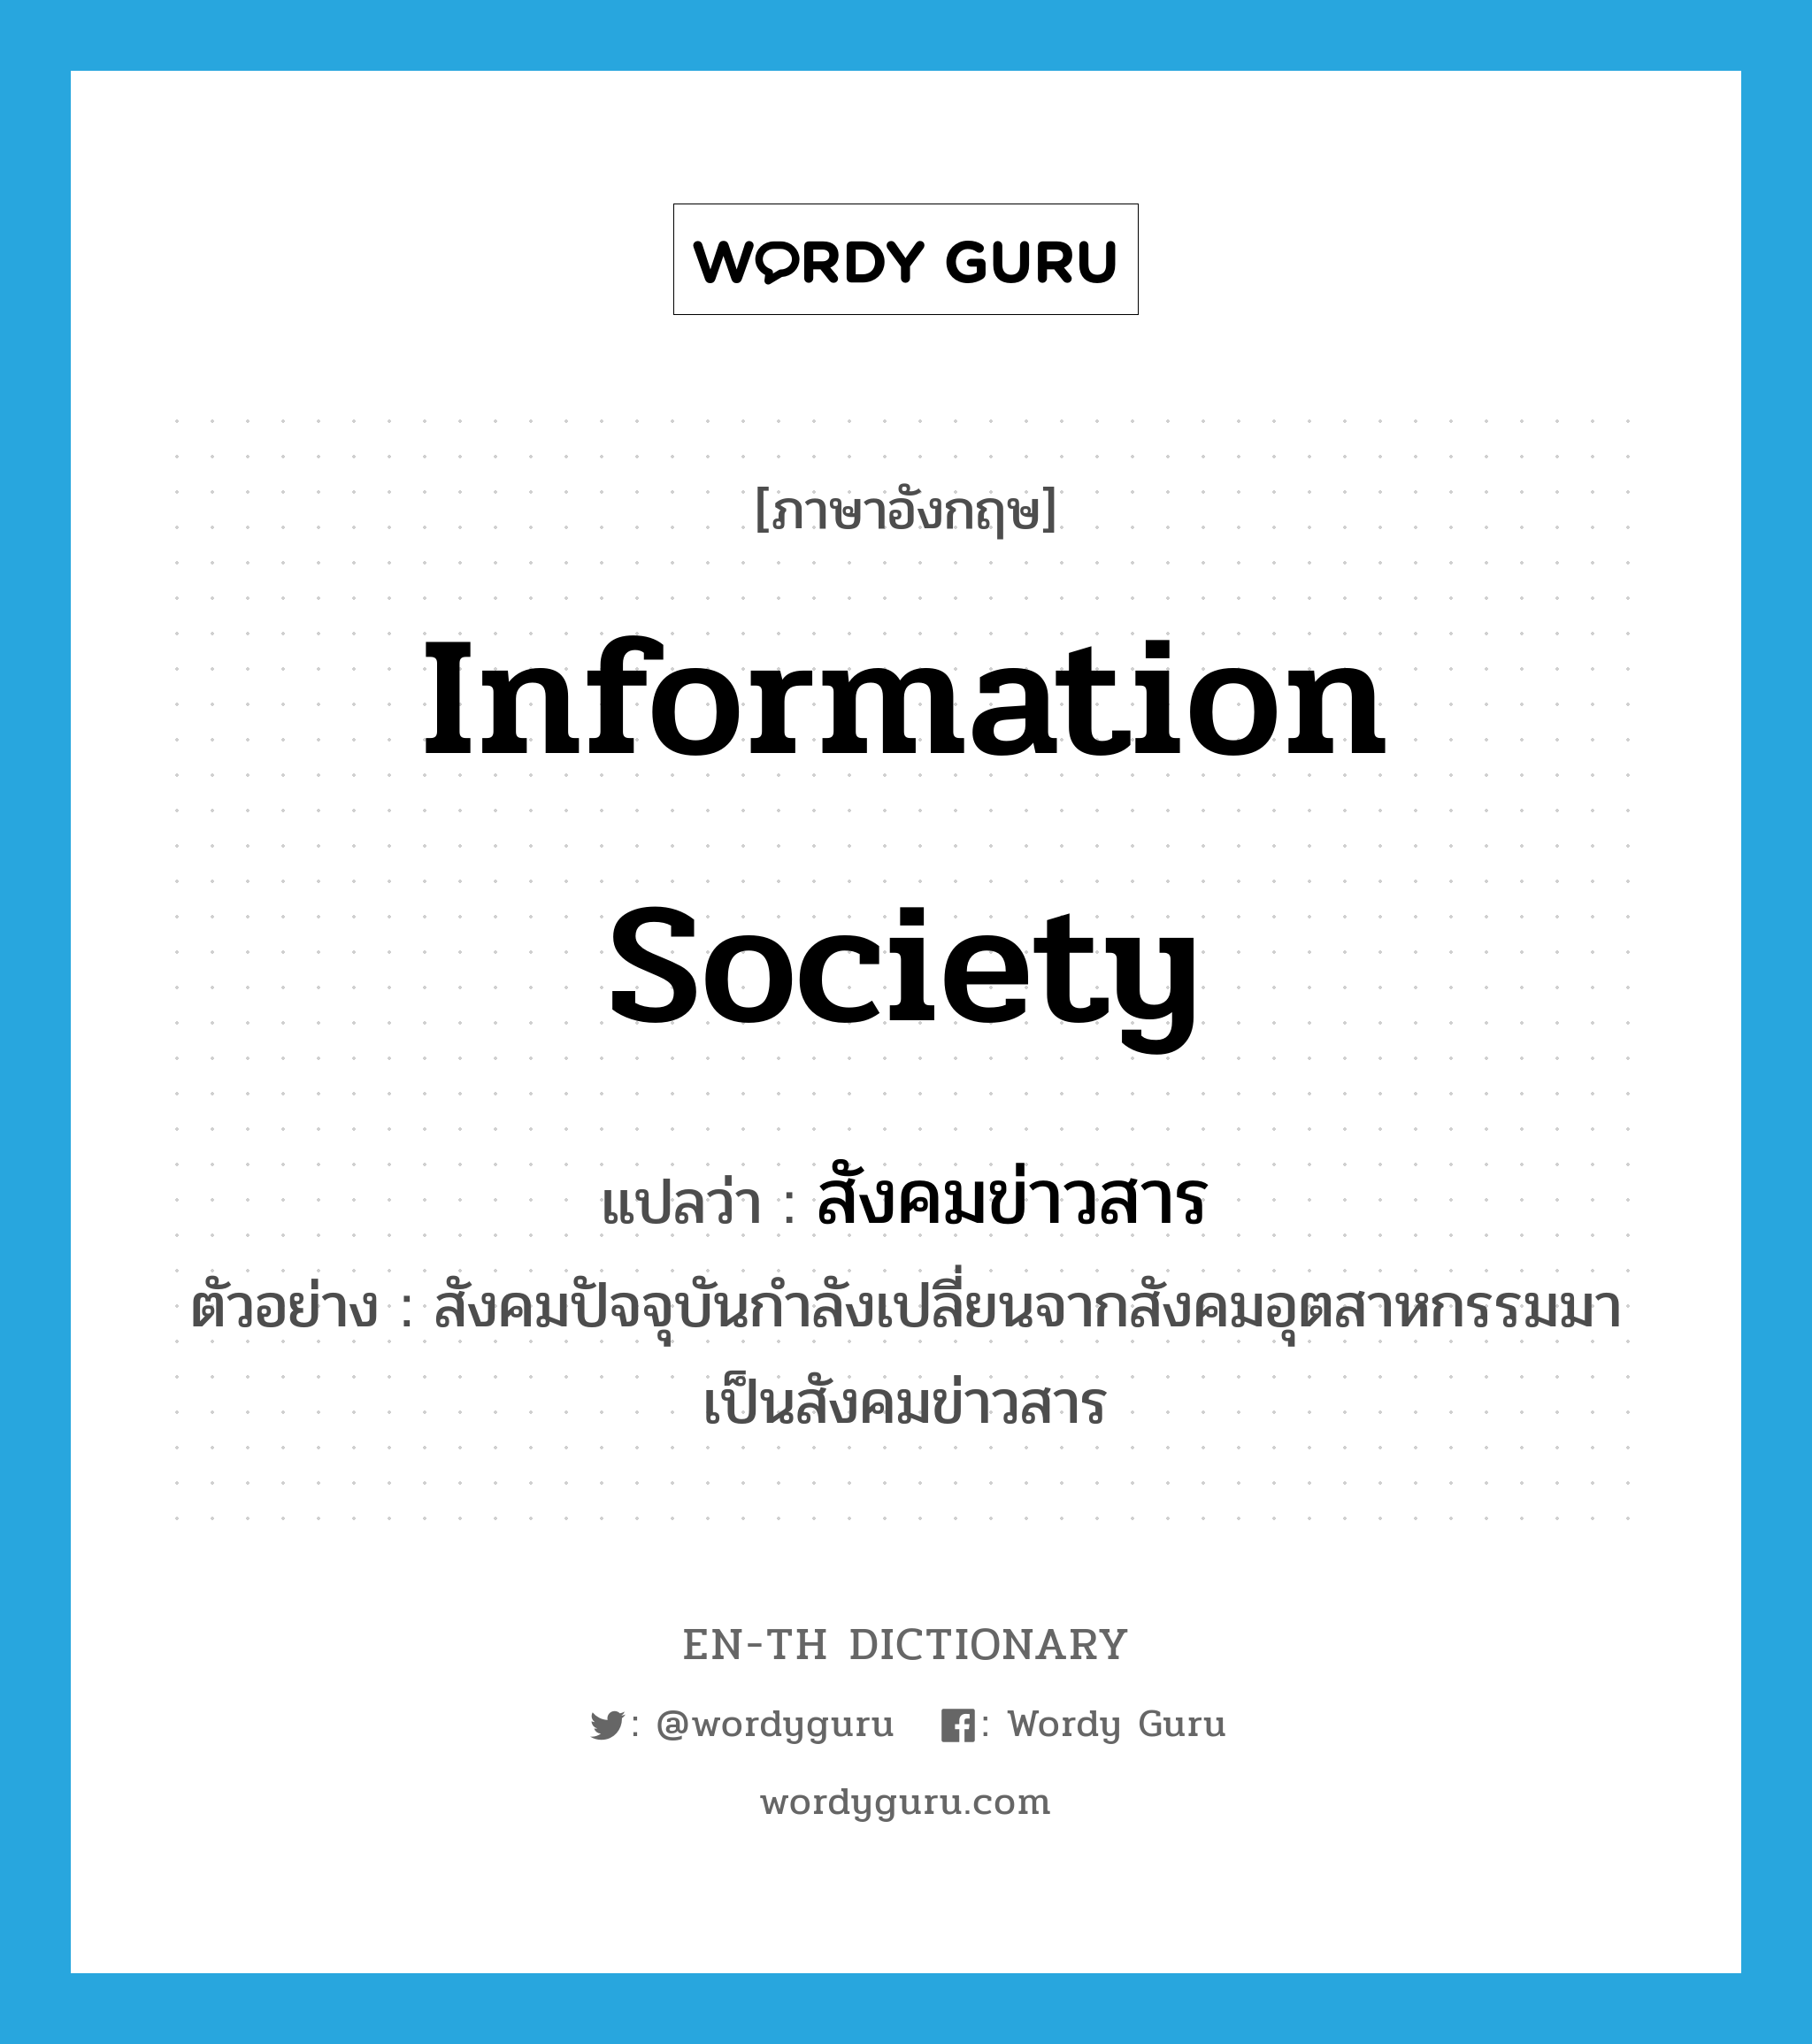 information society แปลว่า?, คำศัพท์ภาษาอังกฤษ information society แปลว่า สังคมข่าวสาร ประเภท N ตัวอย่าง สังคมปัจจุบันกำลังเปลี่ยนจากสังคมอุตสาหกรรมมาเป็นสังคมข่าวสาร หมวด N